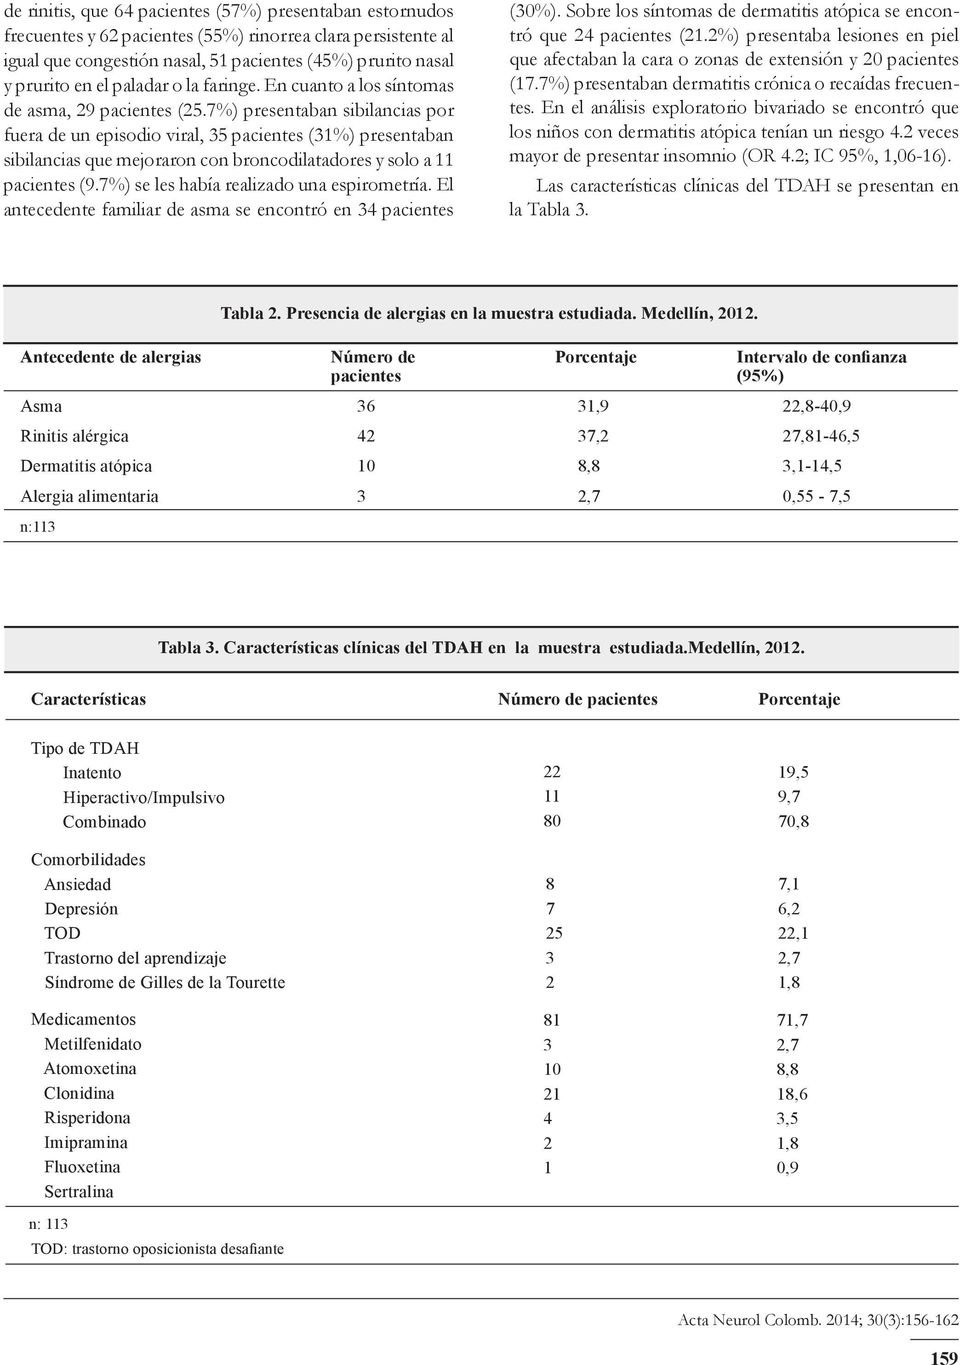 7%) presentaban sibilancias por fuera de un episodio viral, 35 pacientes (31%) presentaban sibilancias que mejoraron con broncodilatadores y solo a 11 pacientes (9.